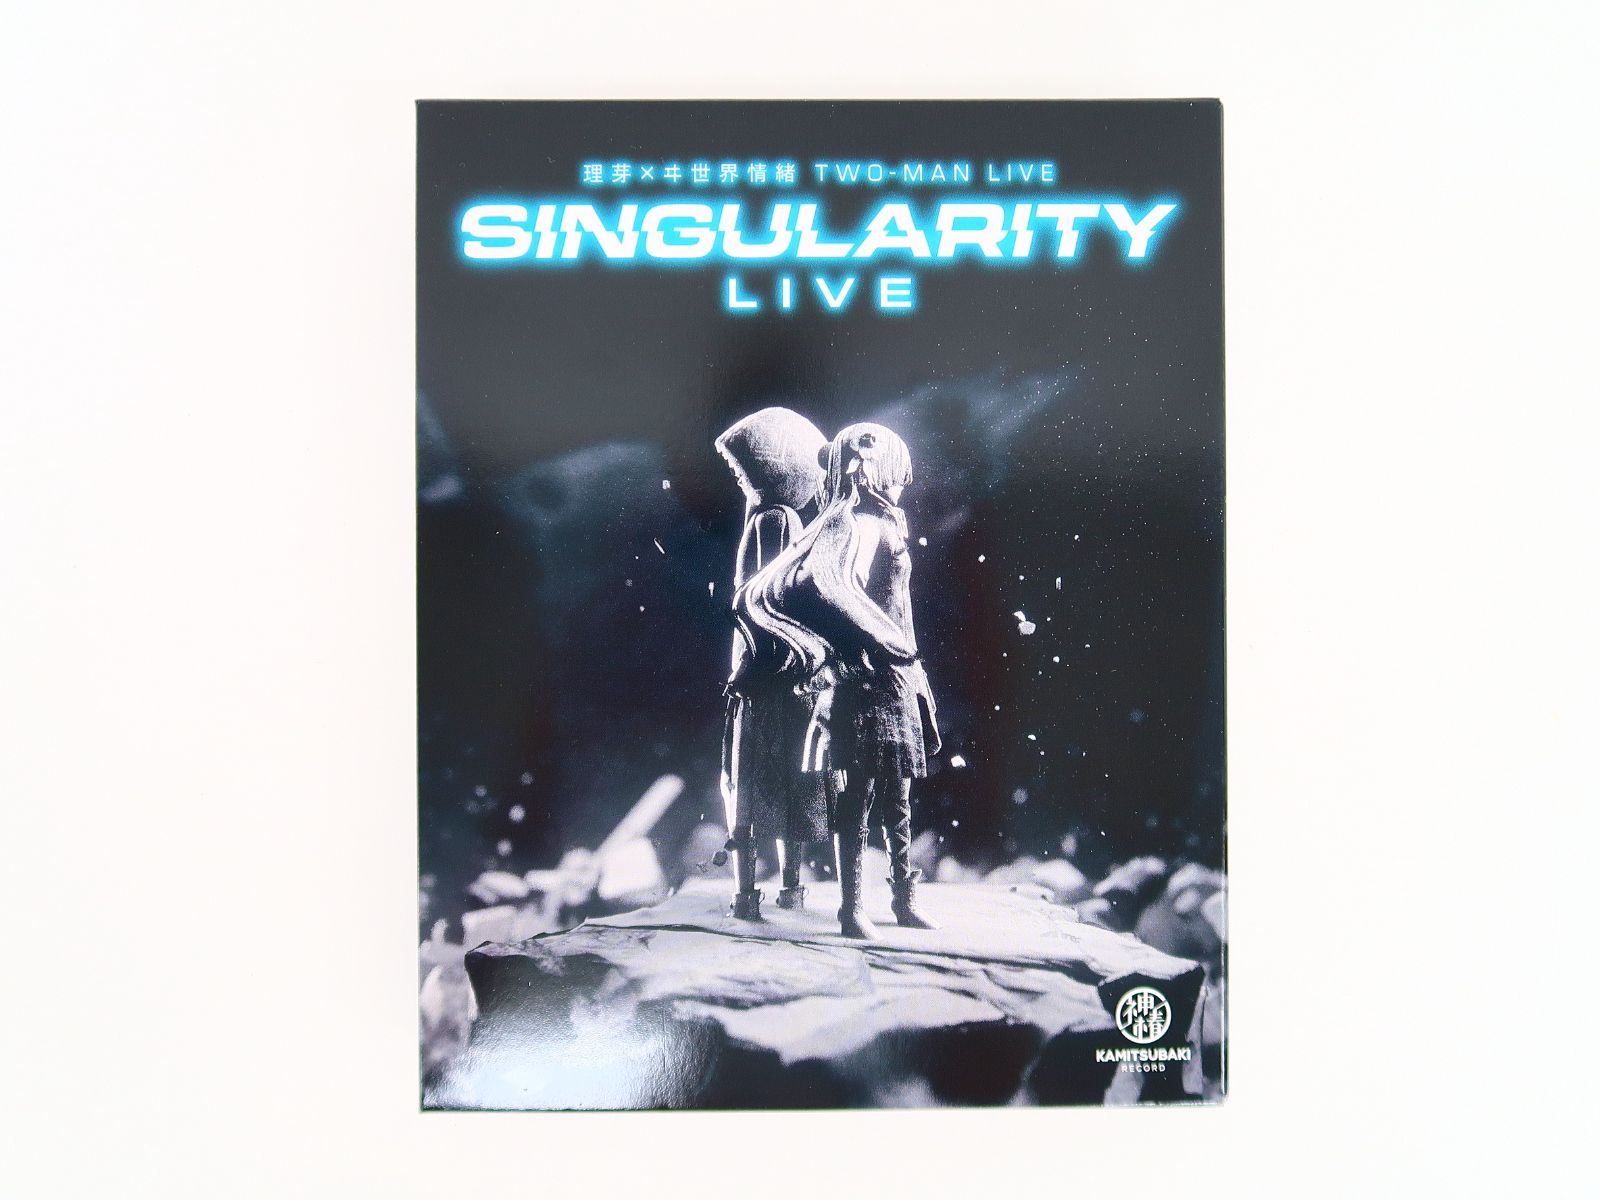 理芽×ヰ世界情緒 TWO-MAN LIVE Blu-ray 「Singularity Live」 / 神椿 